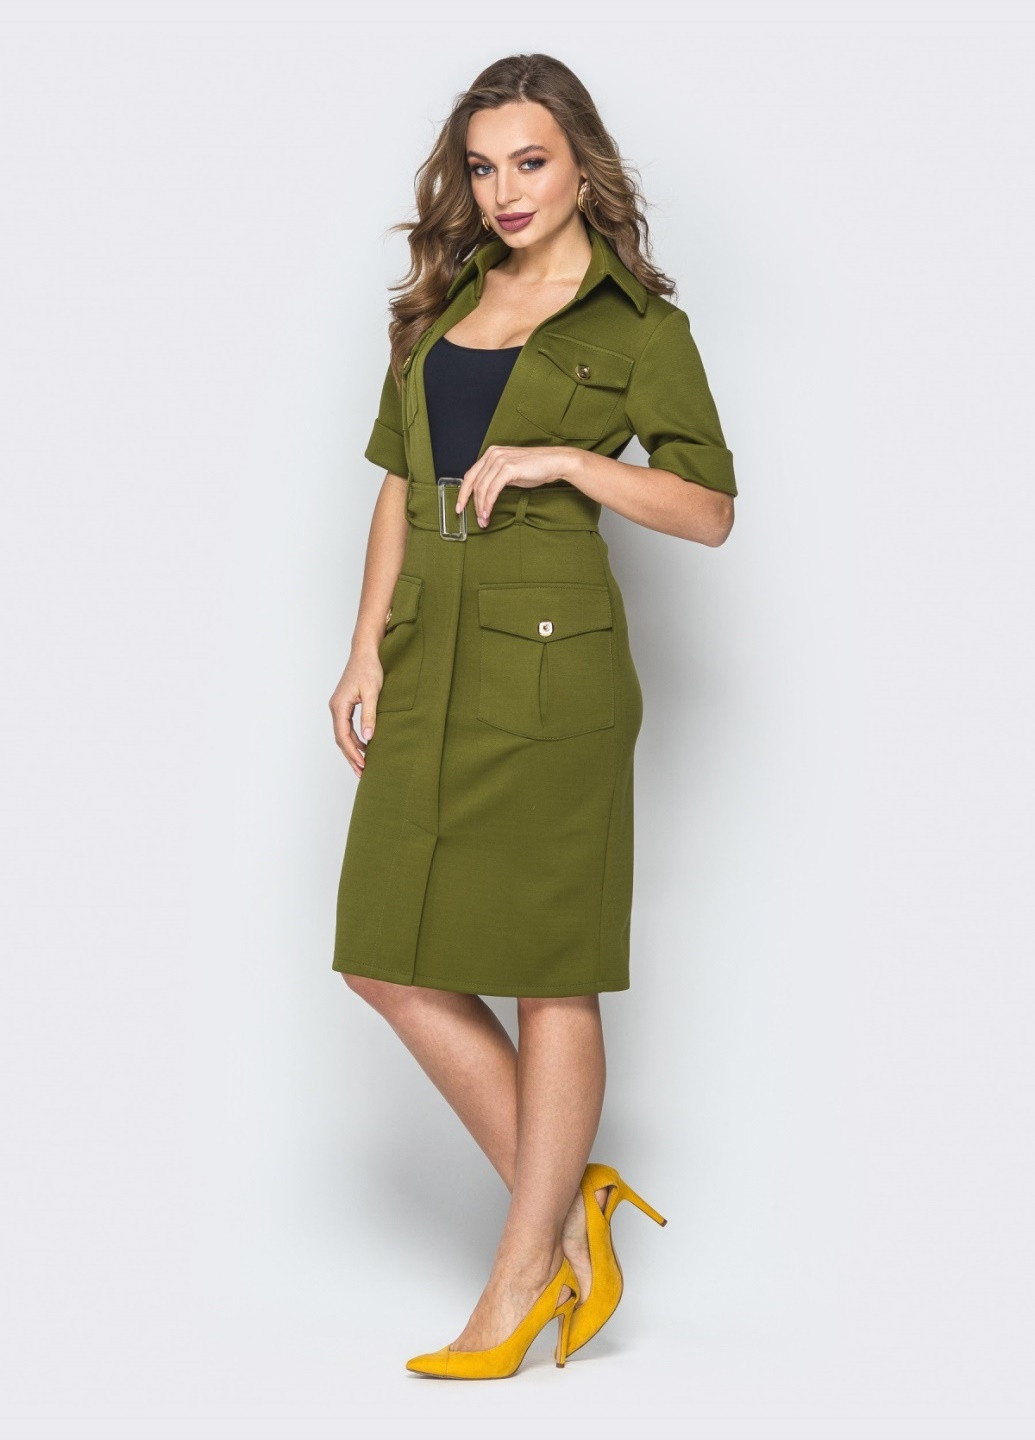 Оливковое (хаки) платье цвета хаки с клапанами на карманах и майкой Dressa